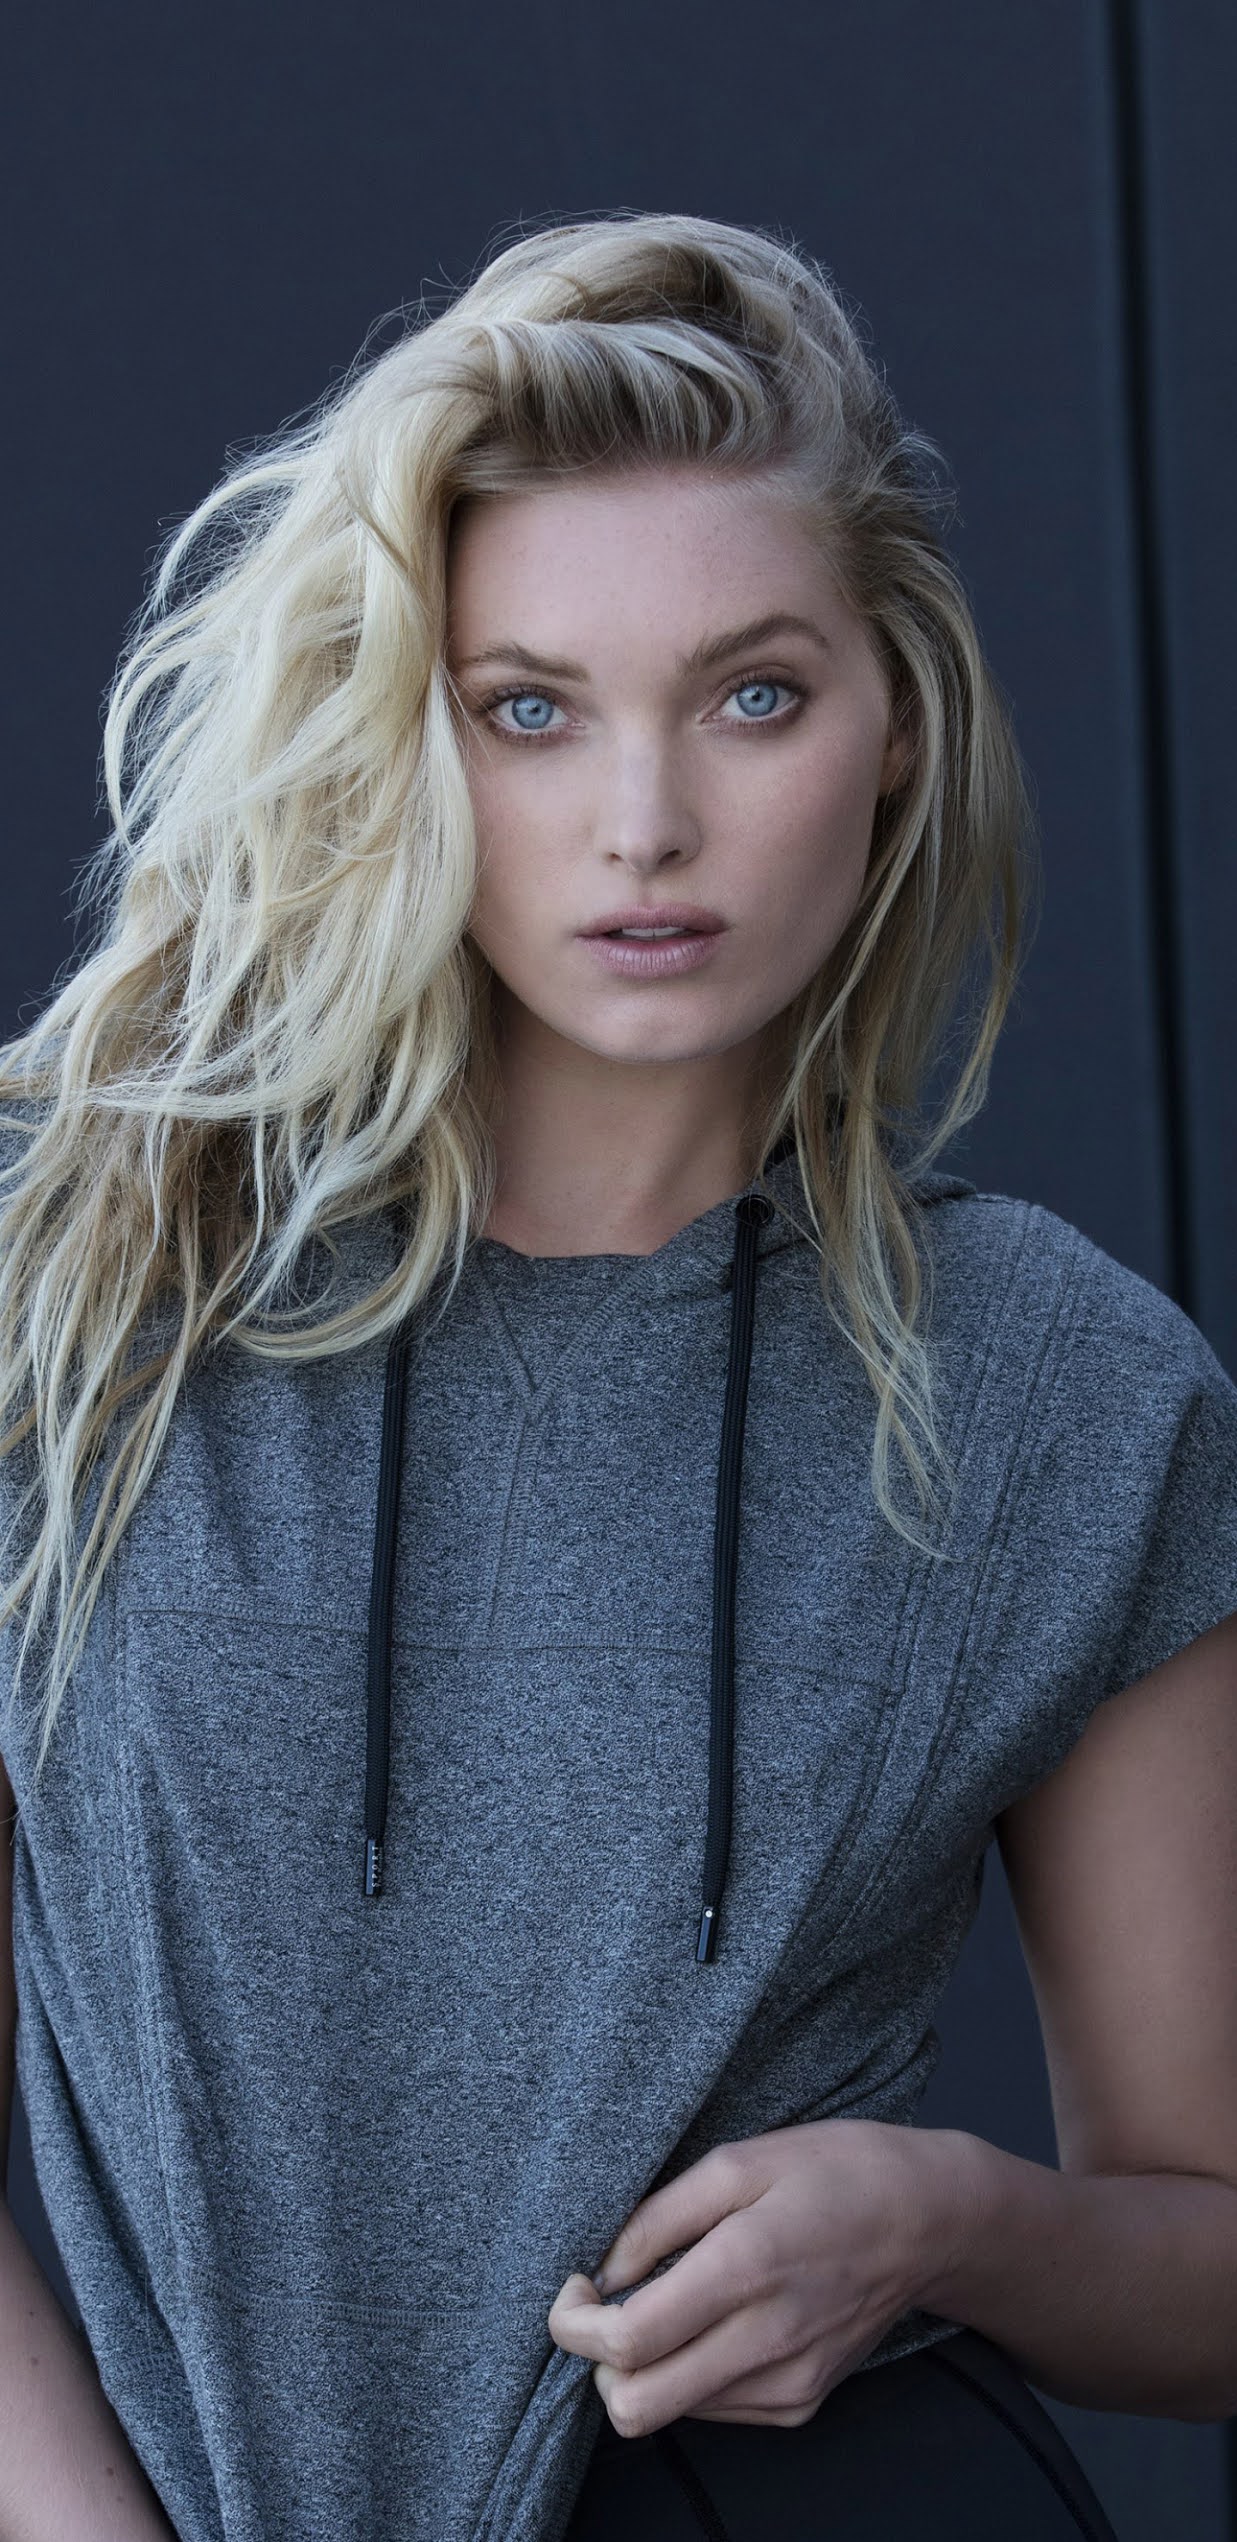 Swedish model Elsa Hosk wallpaper